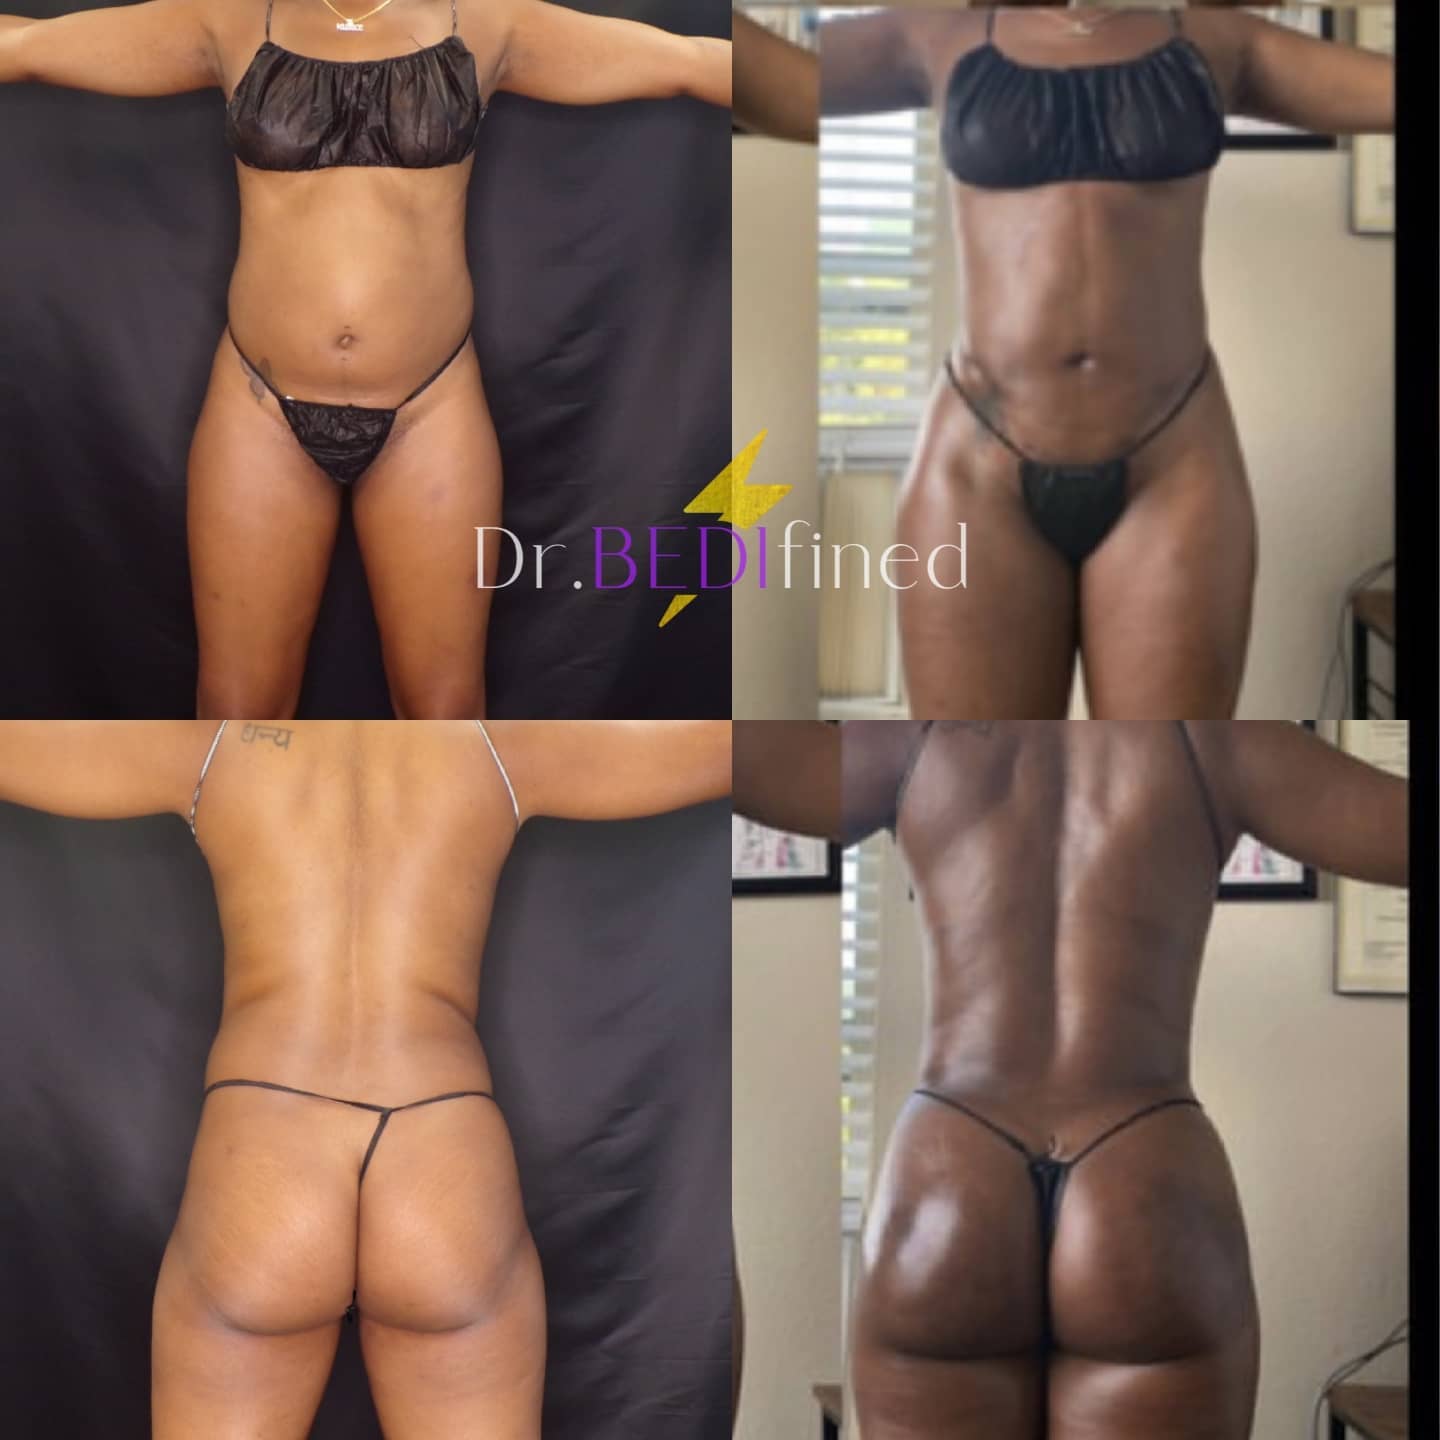 Before & After Brazilian Butt Lift (BBL) Photos